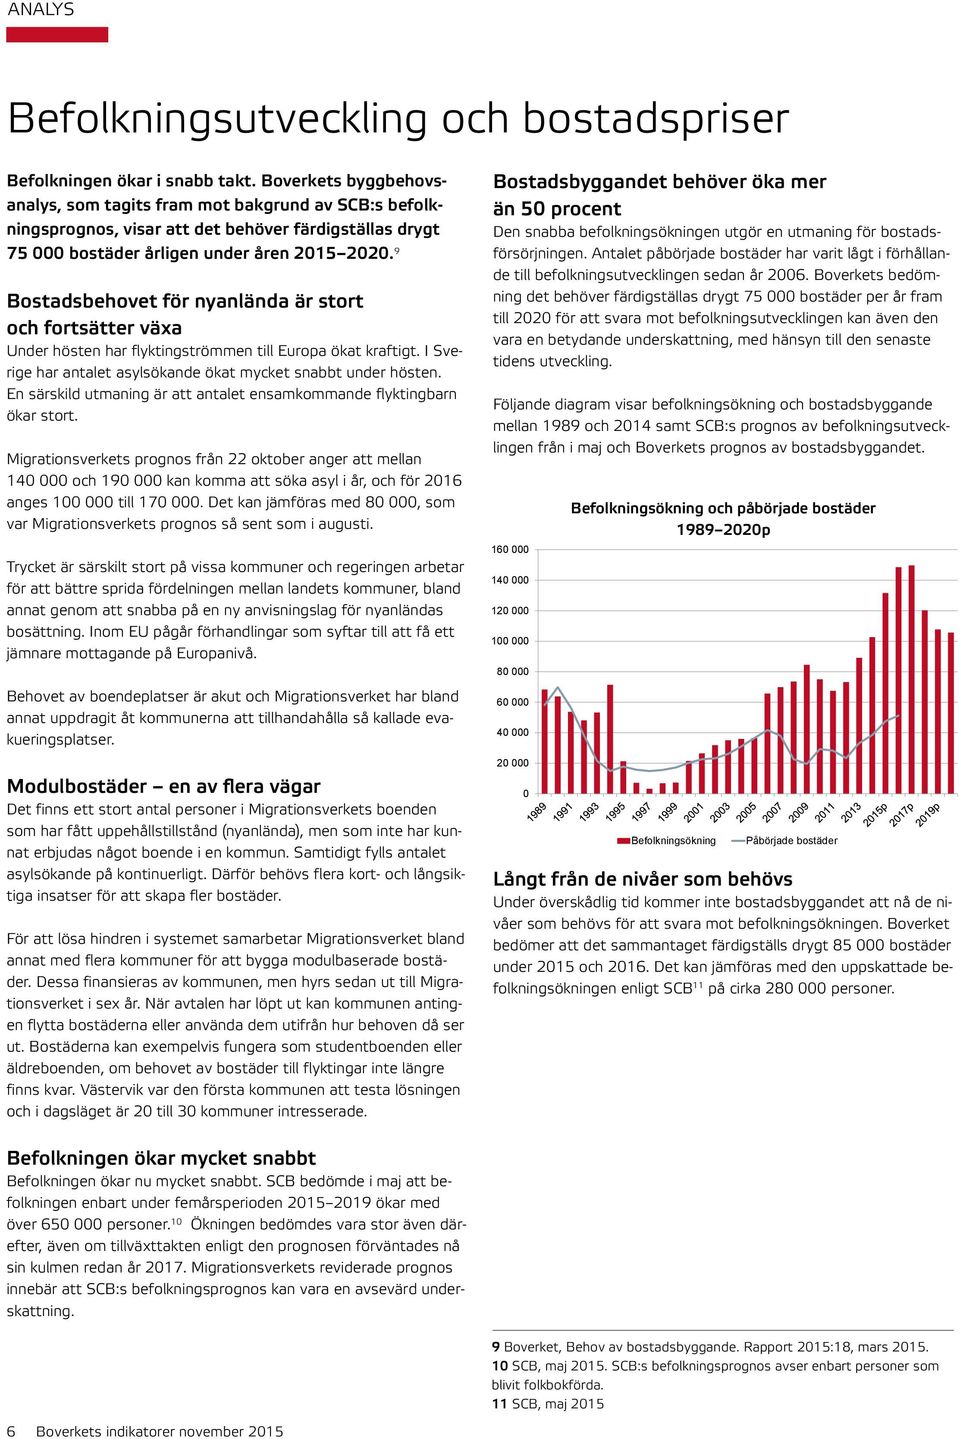 9 Bostadsbehovet för nyanlända är stort och fortsätter växa Under hösten har flyktingströmmen till Europa ökat kraftigt. I Sverige har antalet asylsökande ökat mycket snabbt under hösten.